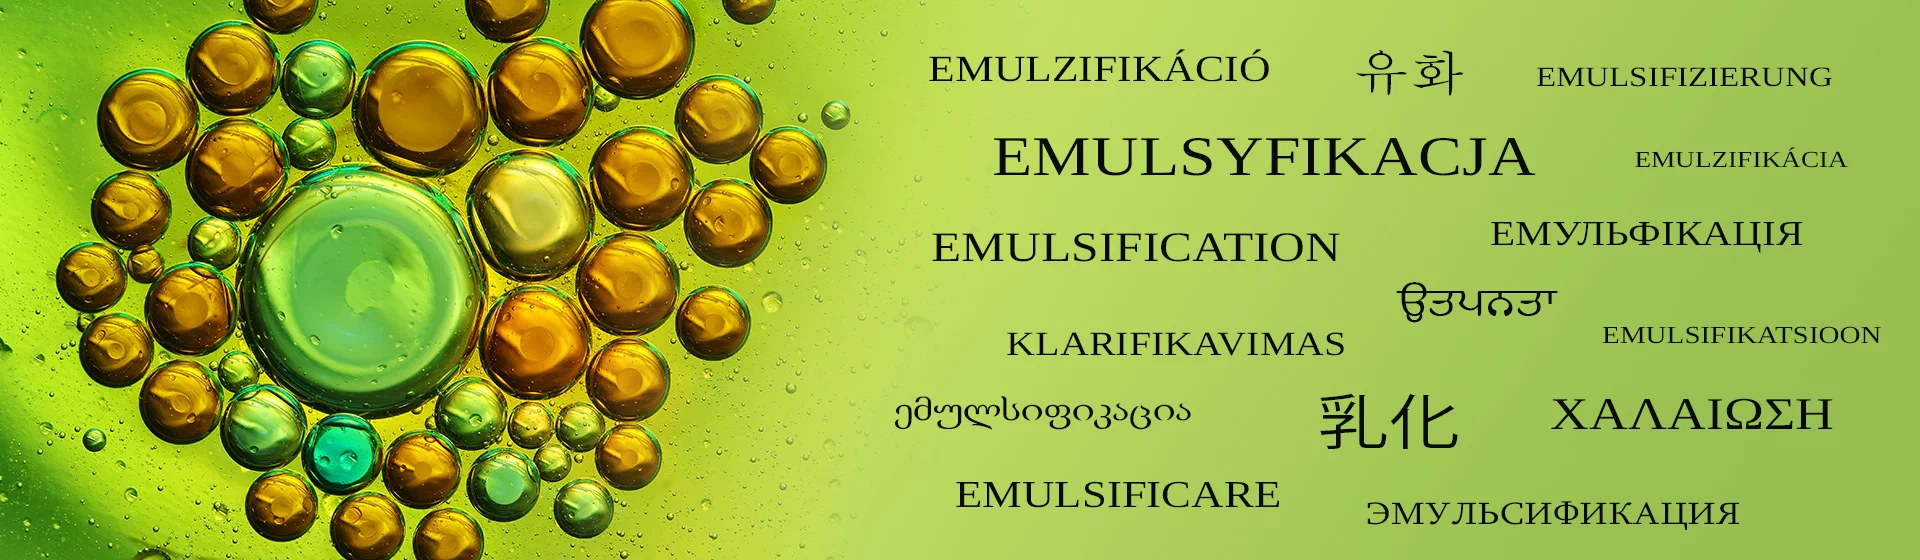 napis Emulsyfikacja w różnych językach